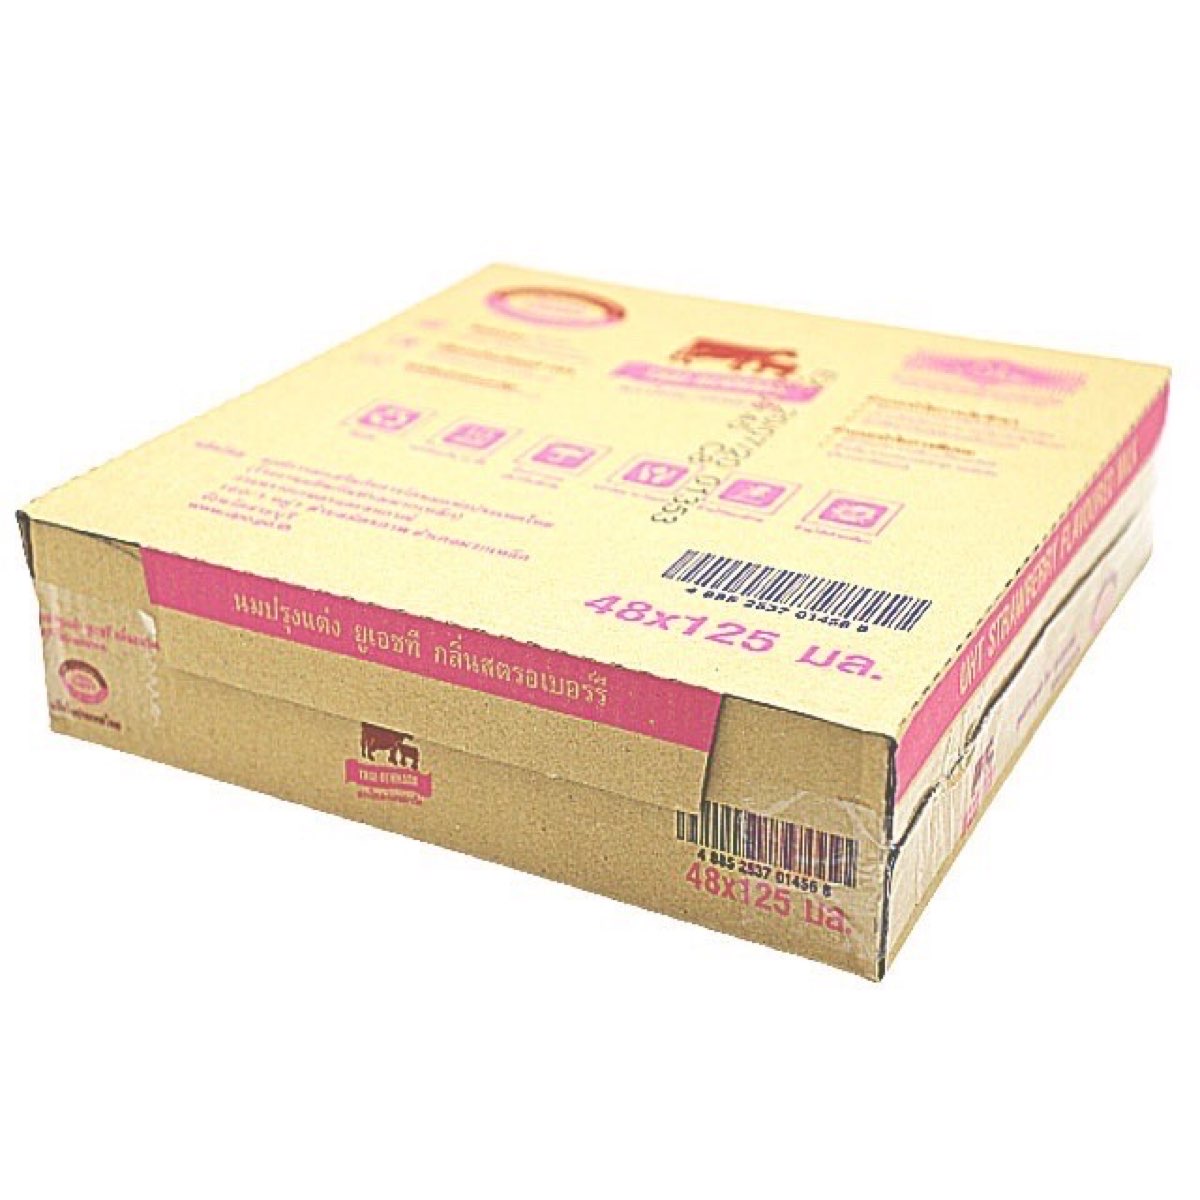 นมไทย-เดนมาร์ค รสสตรอเบอร์รี่ ขนาด 125 ml. บรรจุ 48 กล่อง